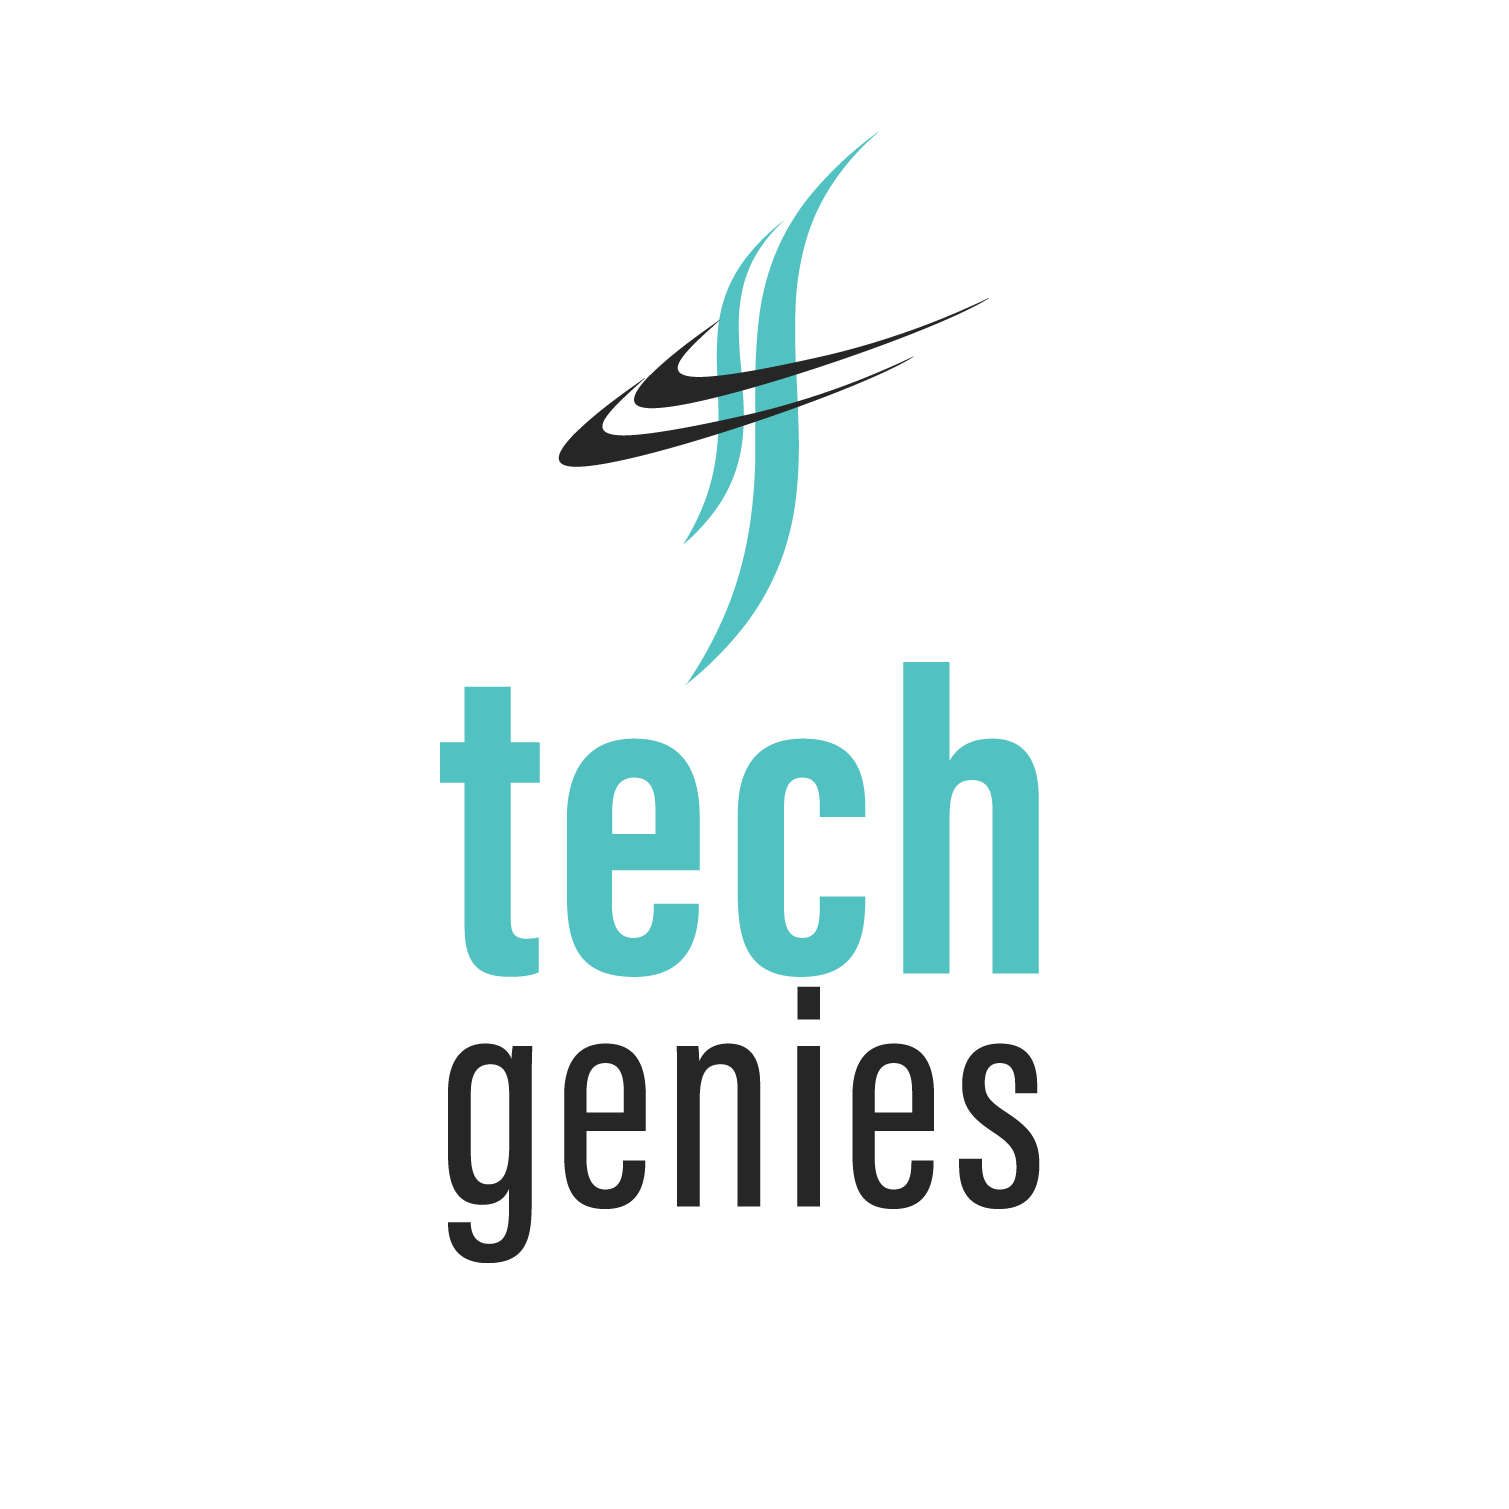 TechGenies logo